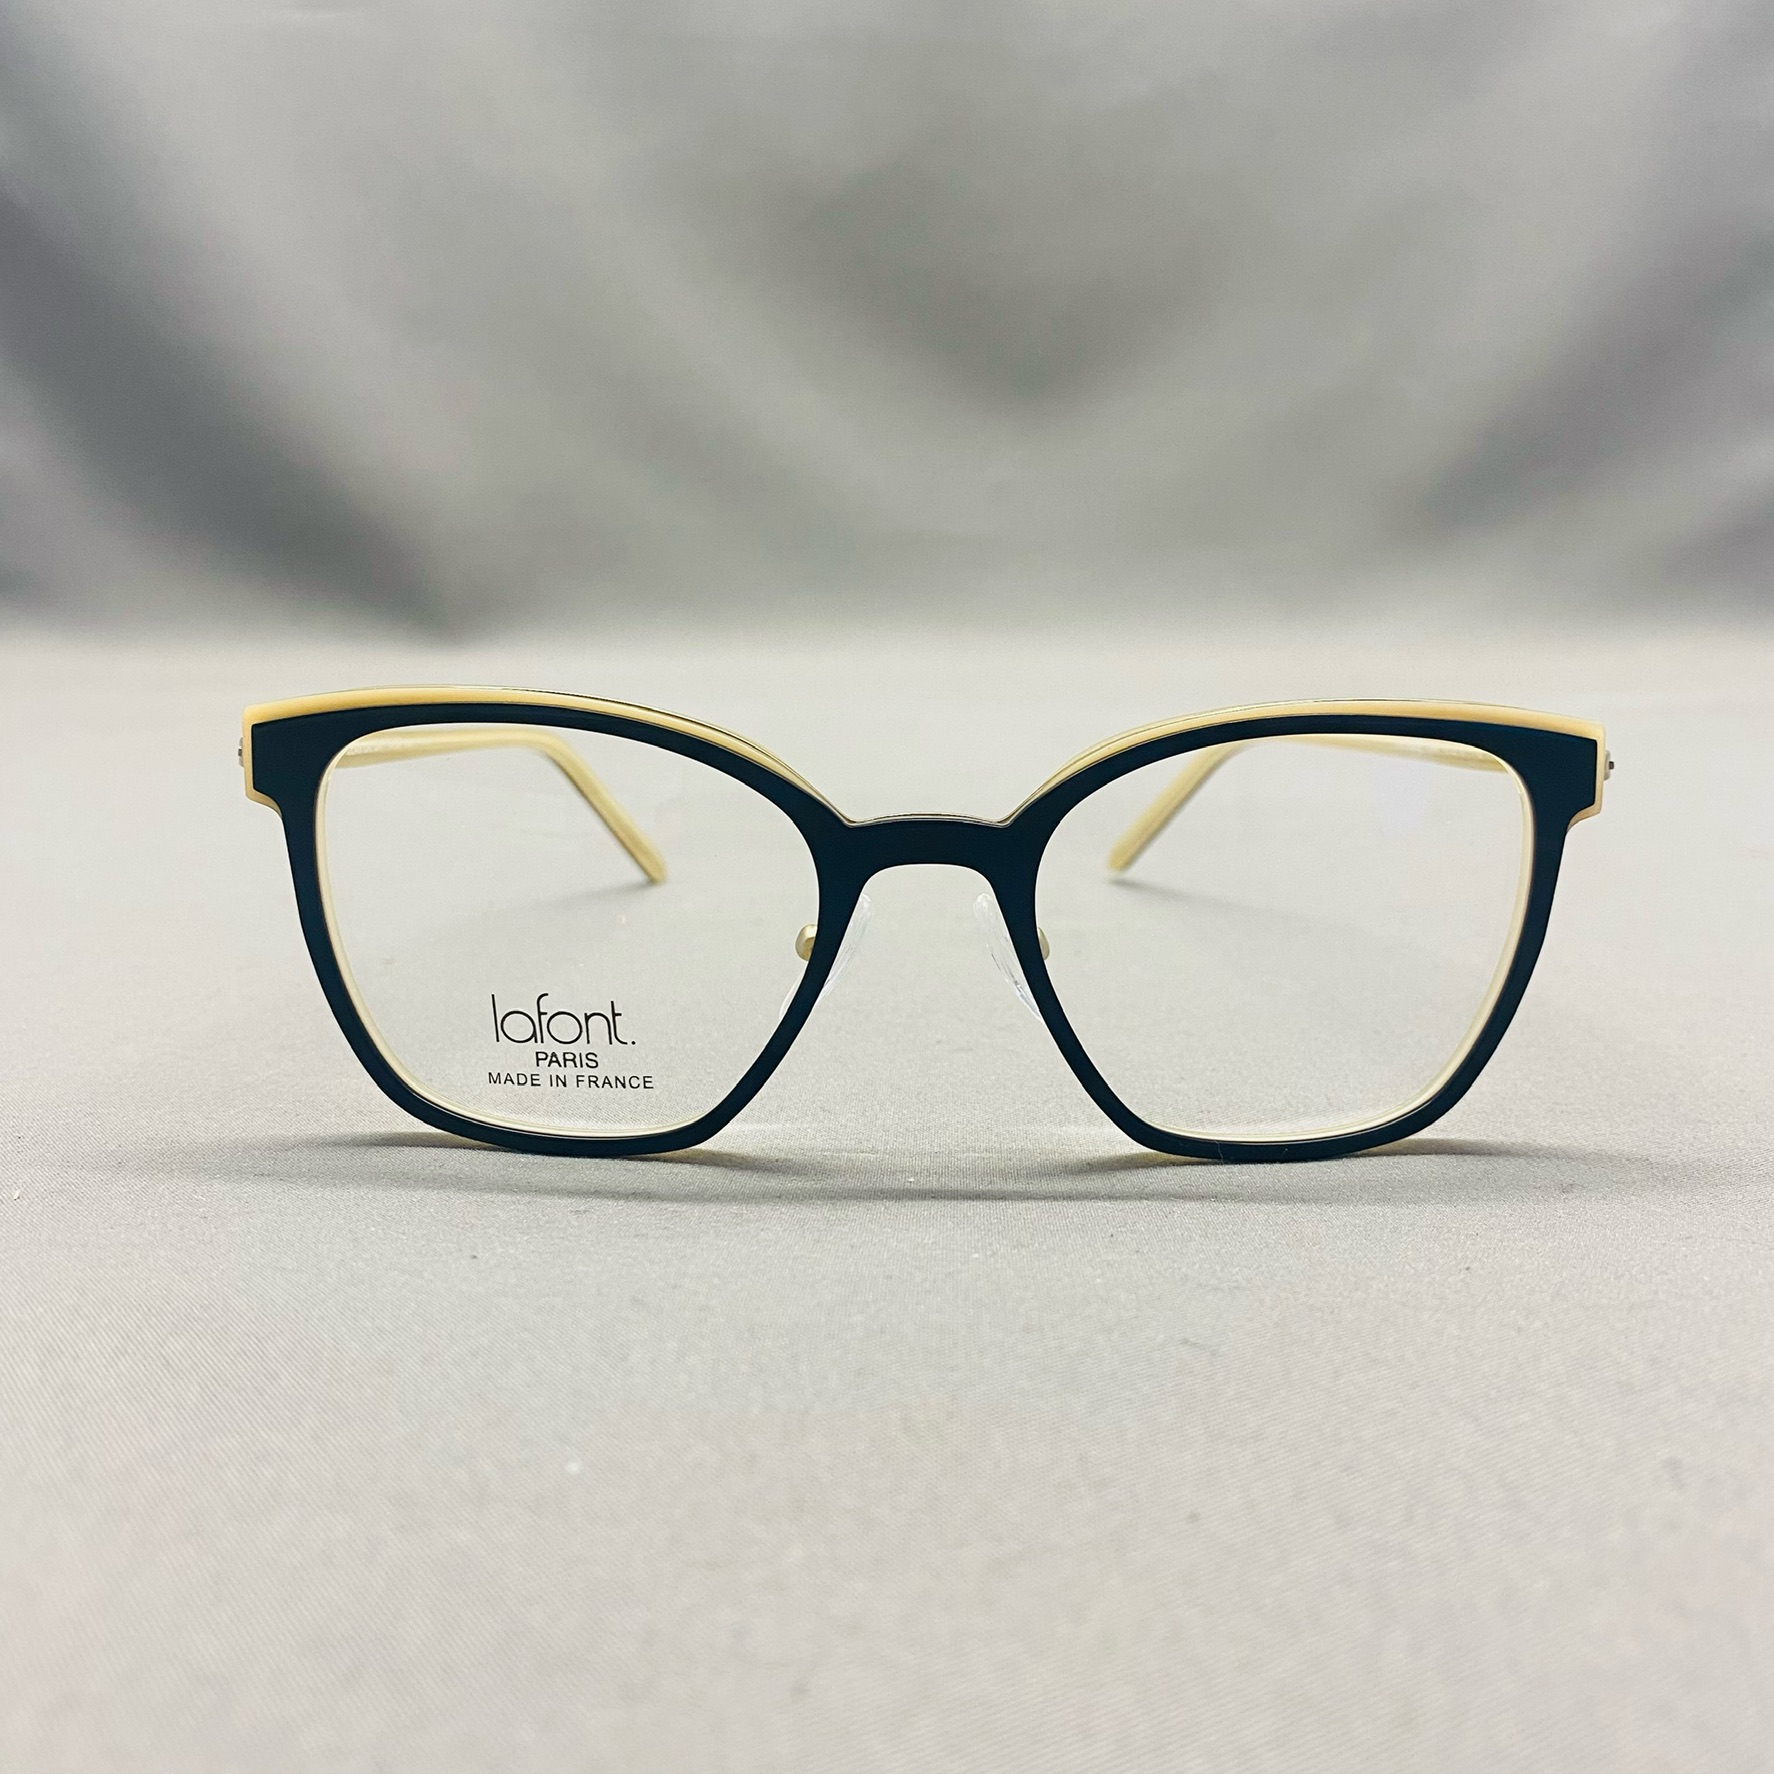 Votre opticien et les lunettes sur mesure : les bonnes adresses !